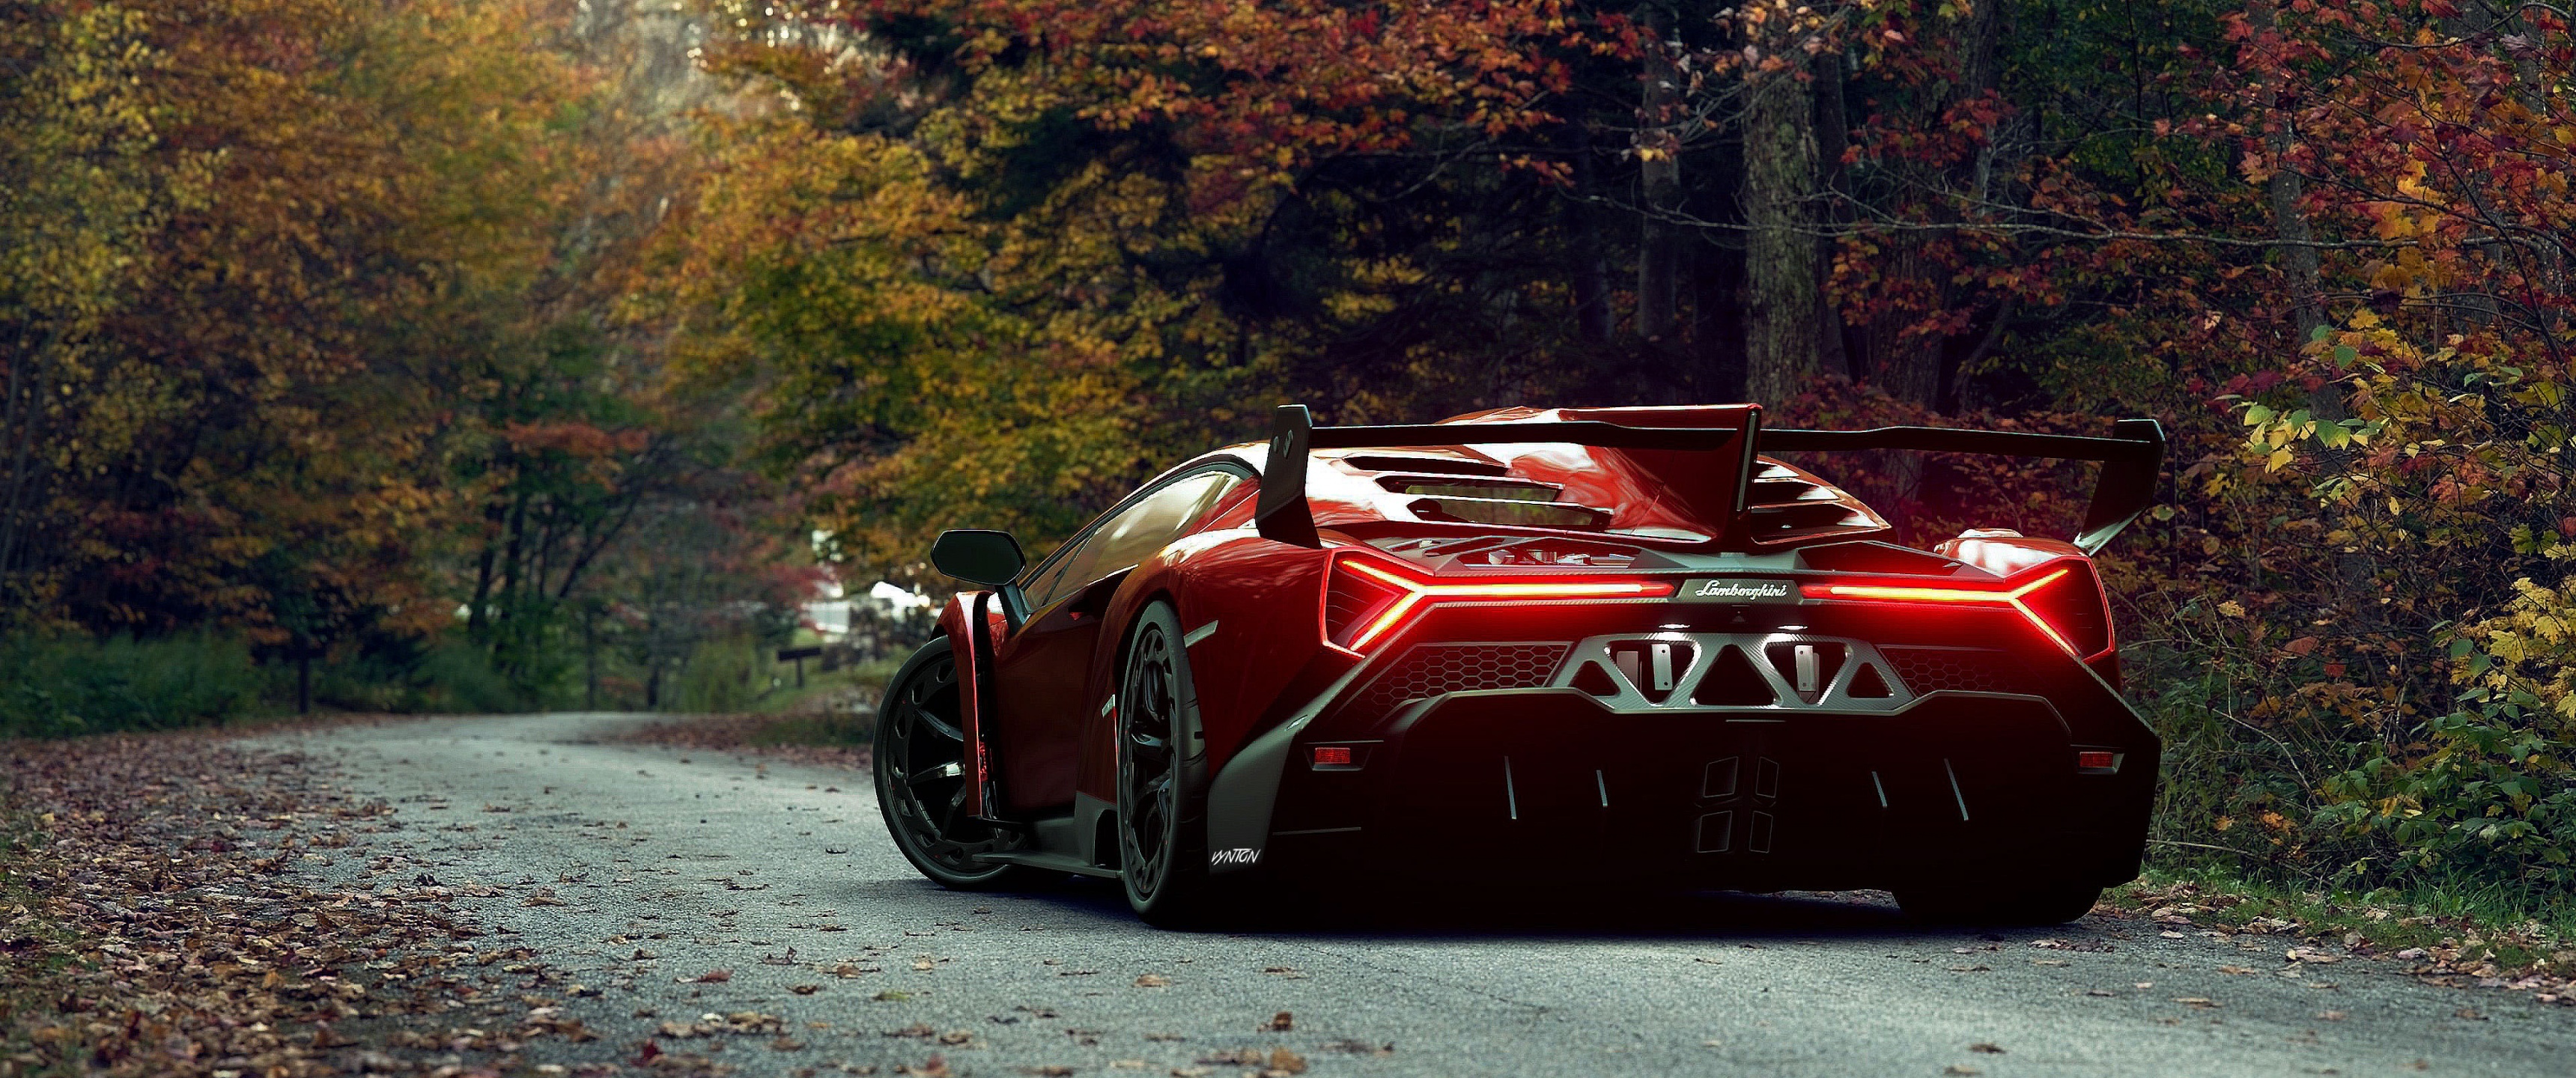 Lamborghini Veneno, Roadster wallpaper, 4K digital art, Seasonal beauty, 3440x1440 Dual Screen Desktop